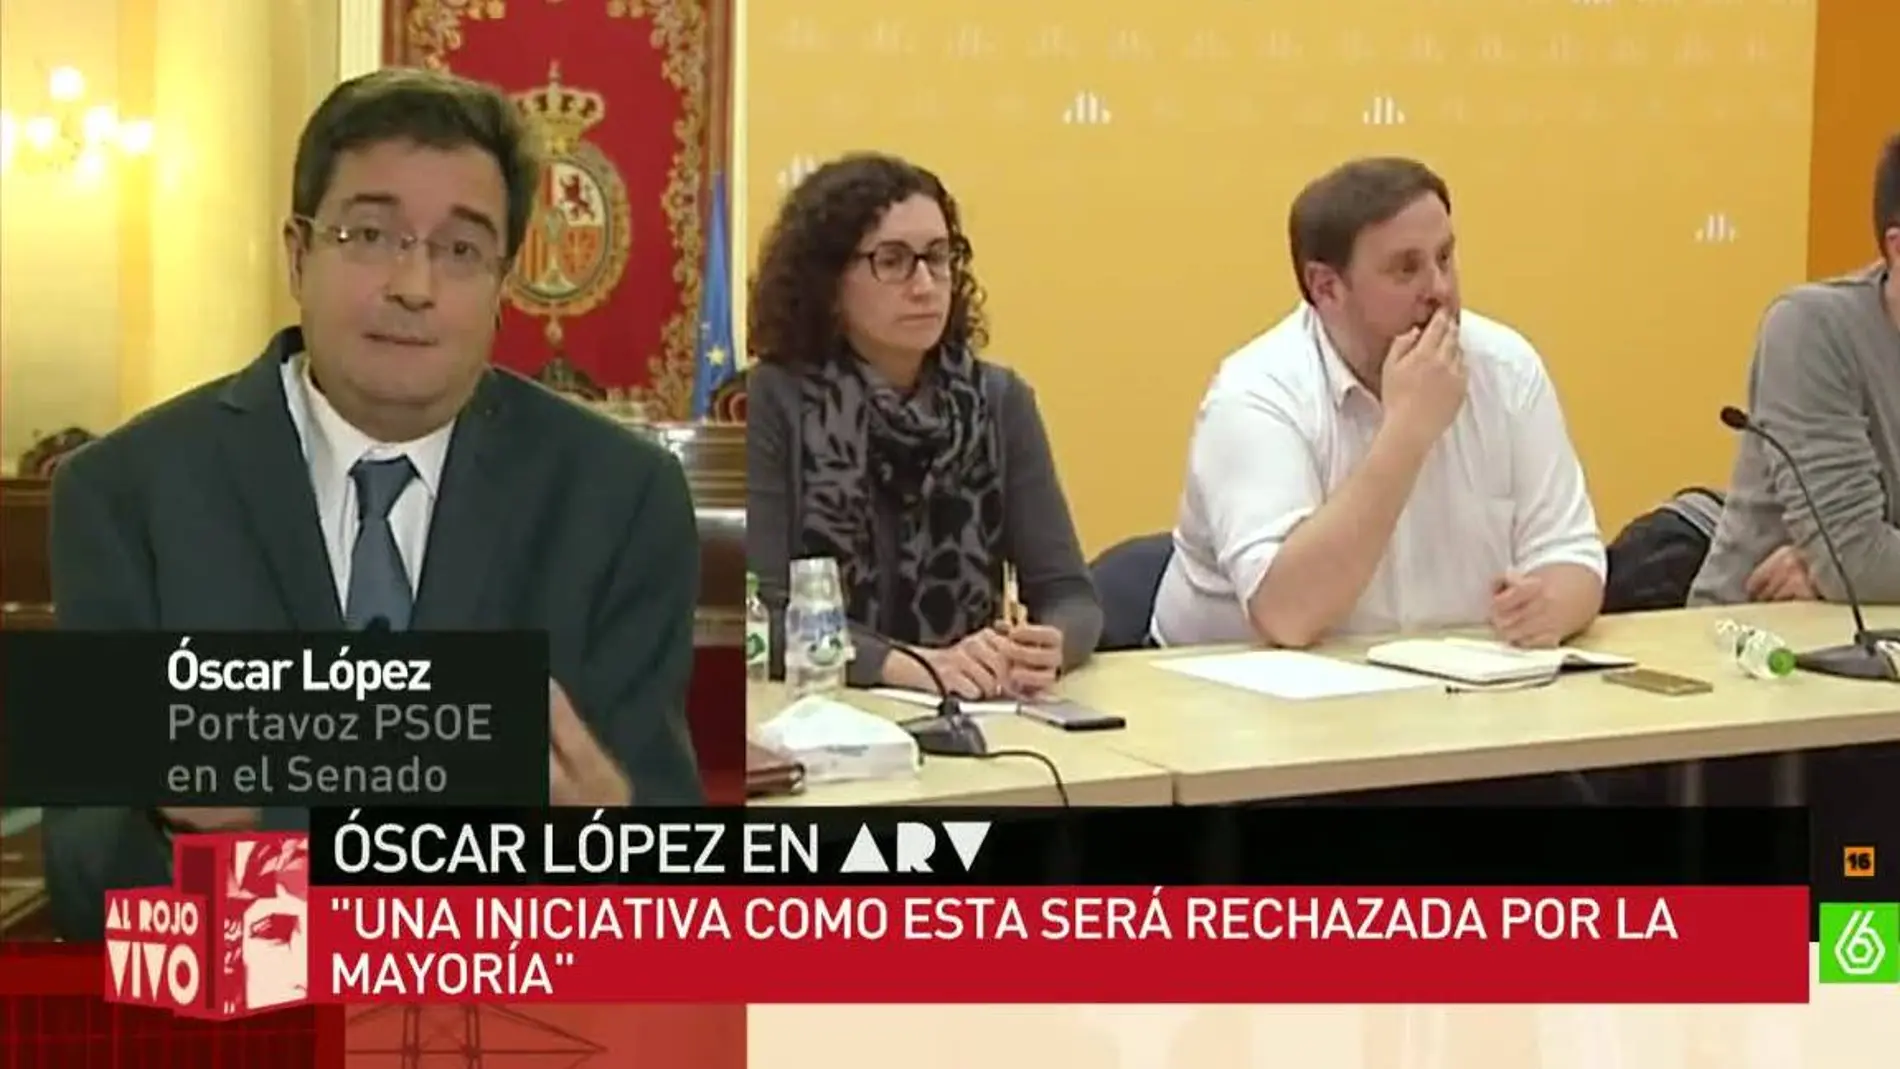 Óscar López, portavoz del PSOE en el Senado